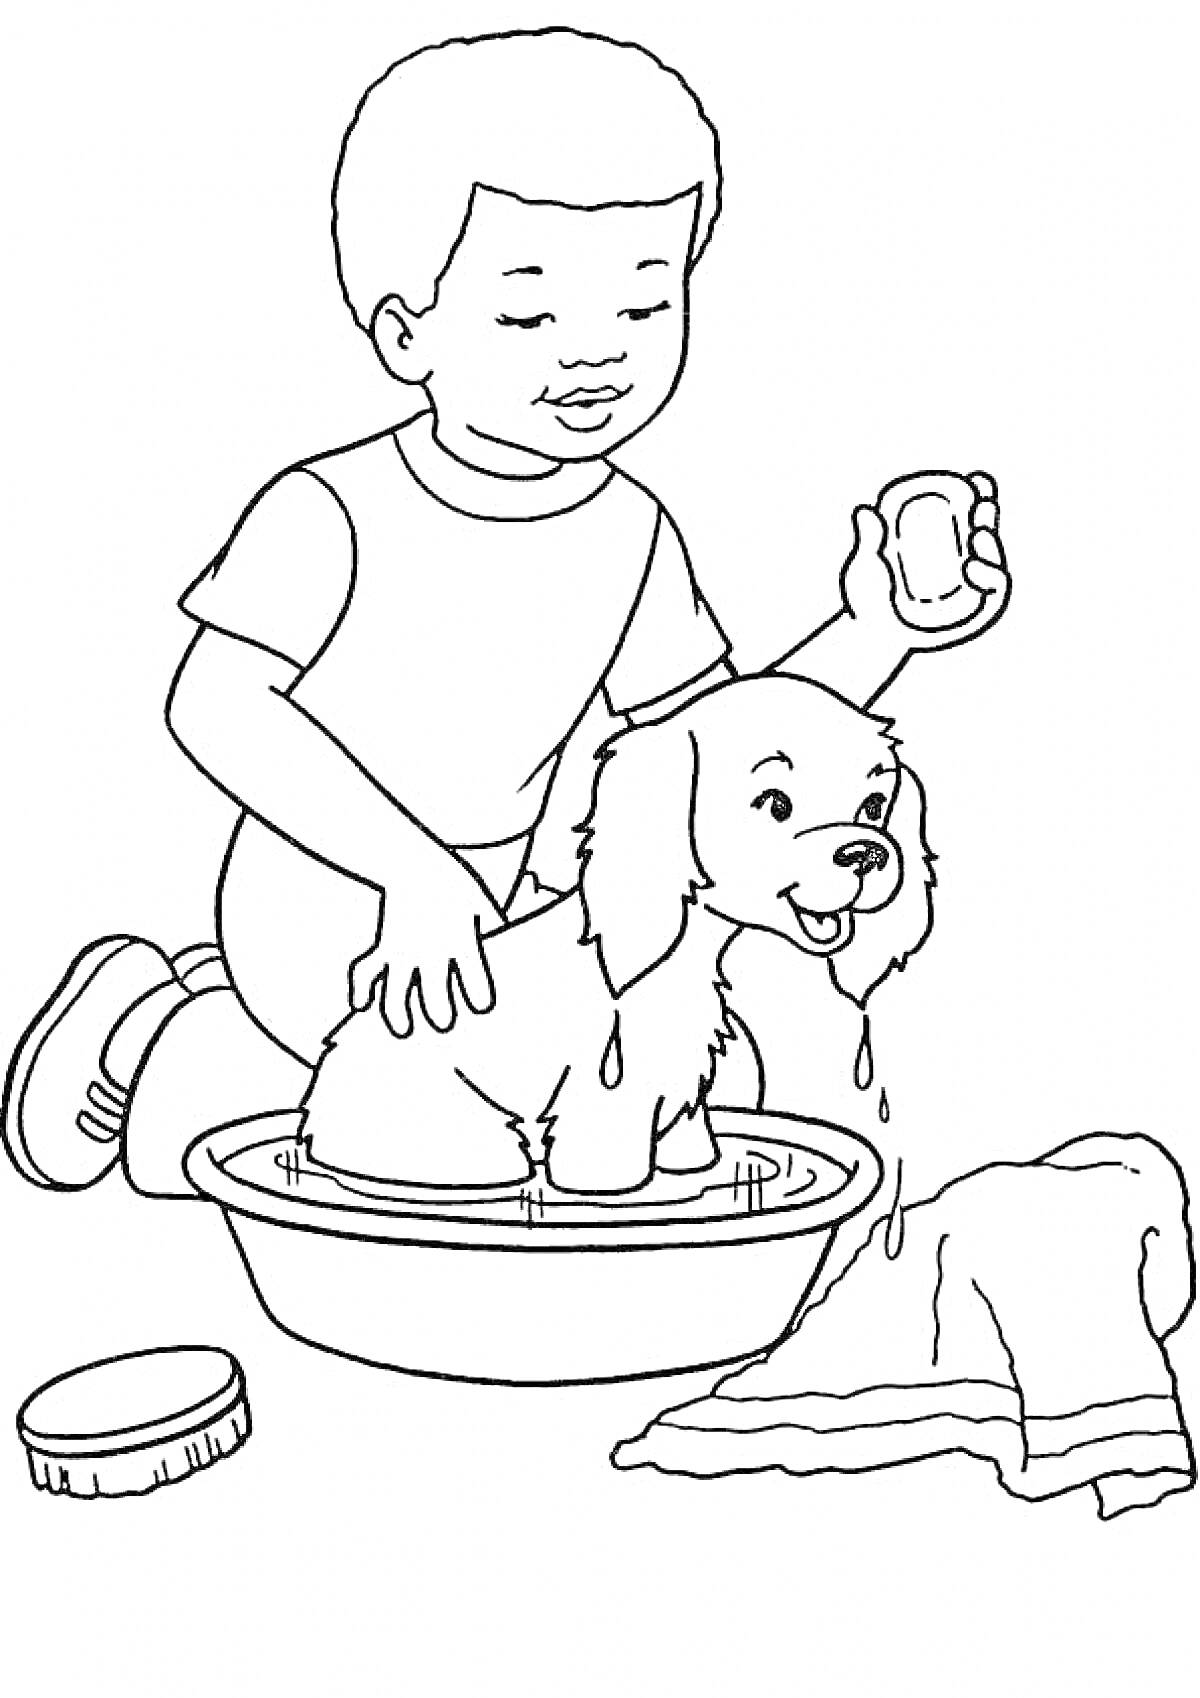 Мальчик моет щенка в тазике, используя губку, рядом лежит полотенце и щетка